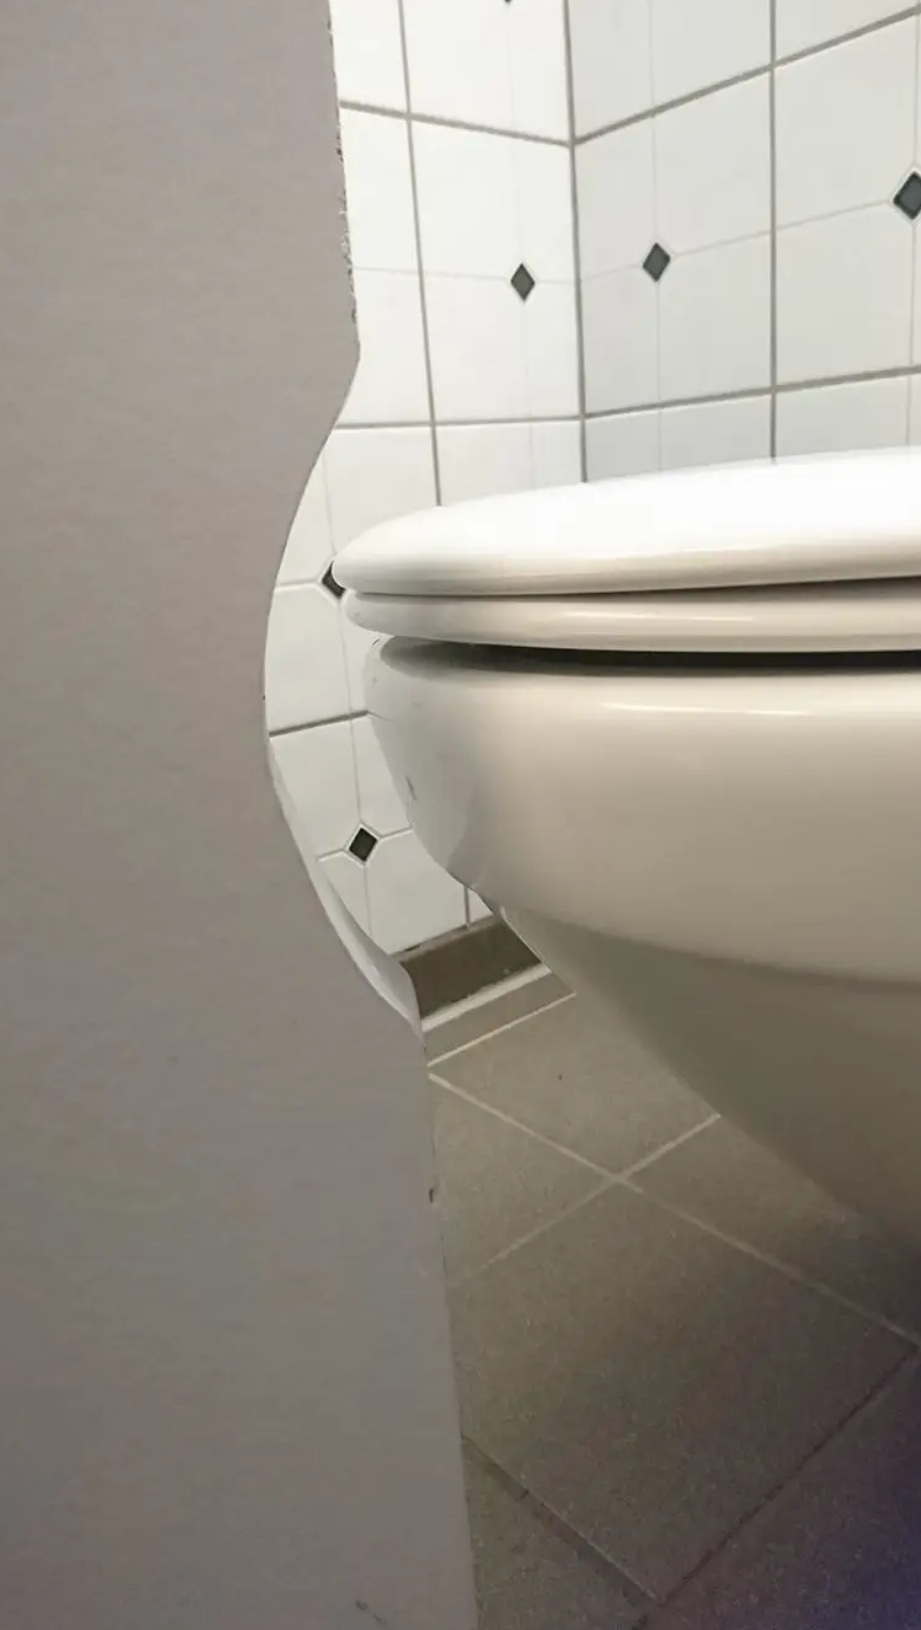 wc školjka koju nije lako koristiti